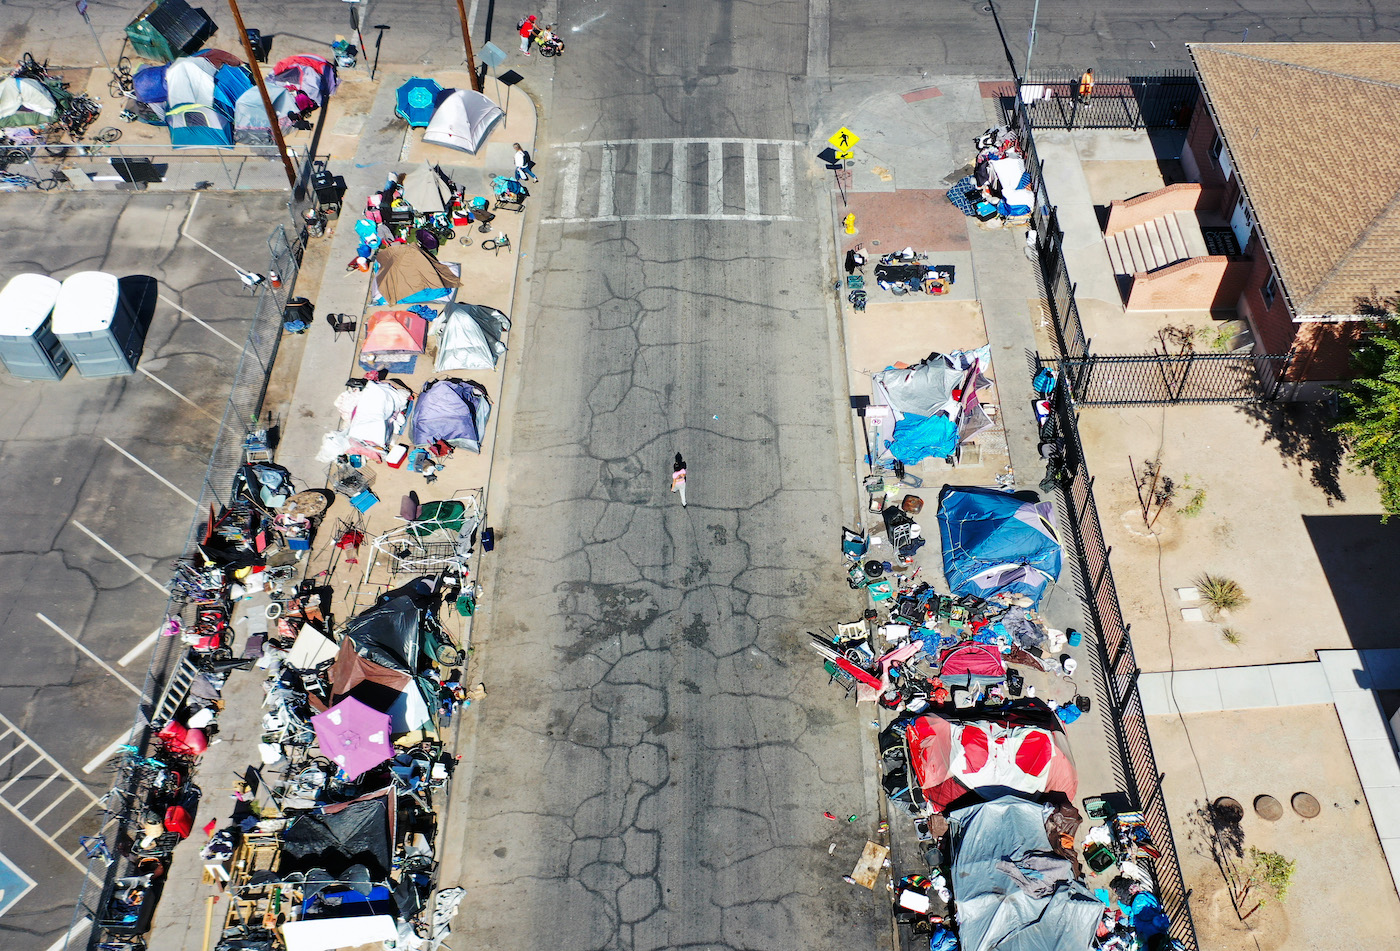 Hoa Kỳ: Các chính sách ‘sai lầm’ của chính phủ làm trầm trọng thêm cuộc khủng hoảng vô gia cư